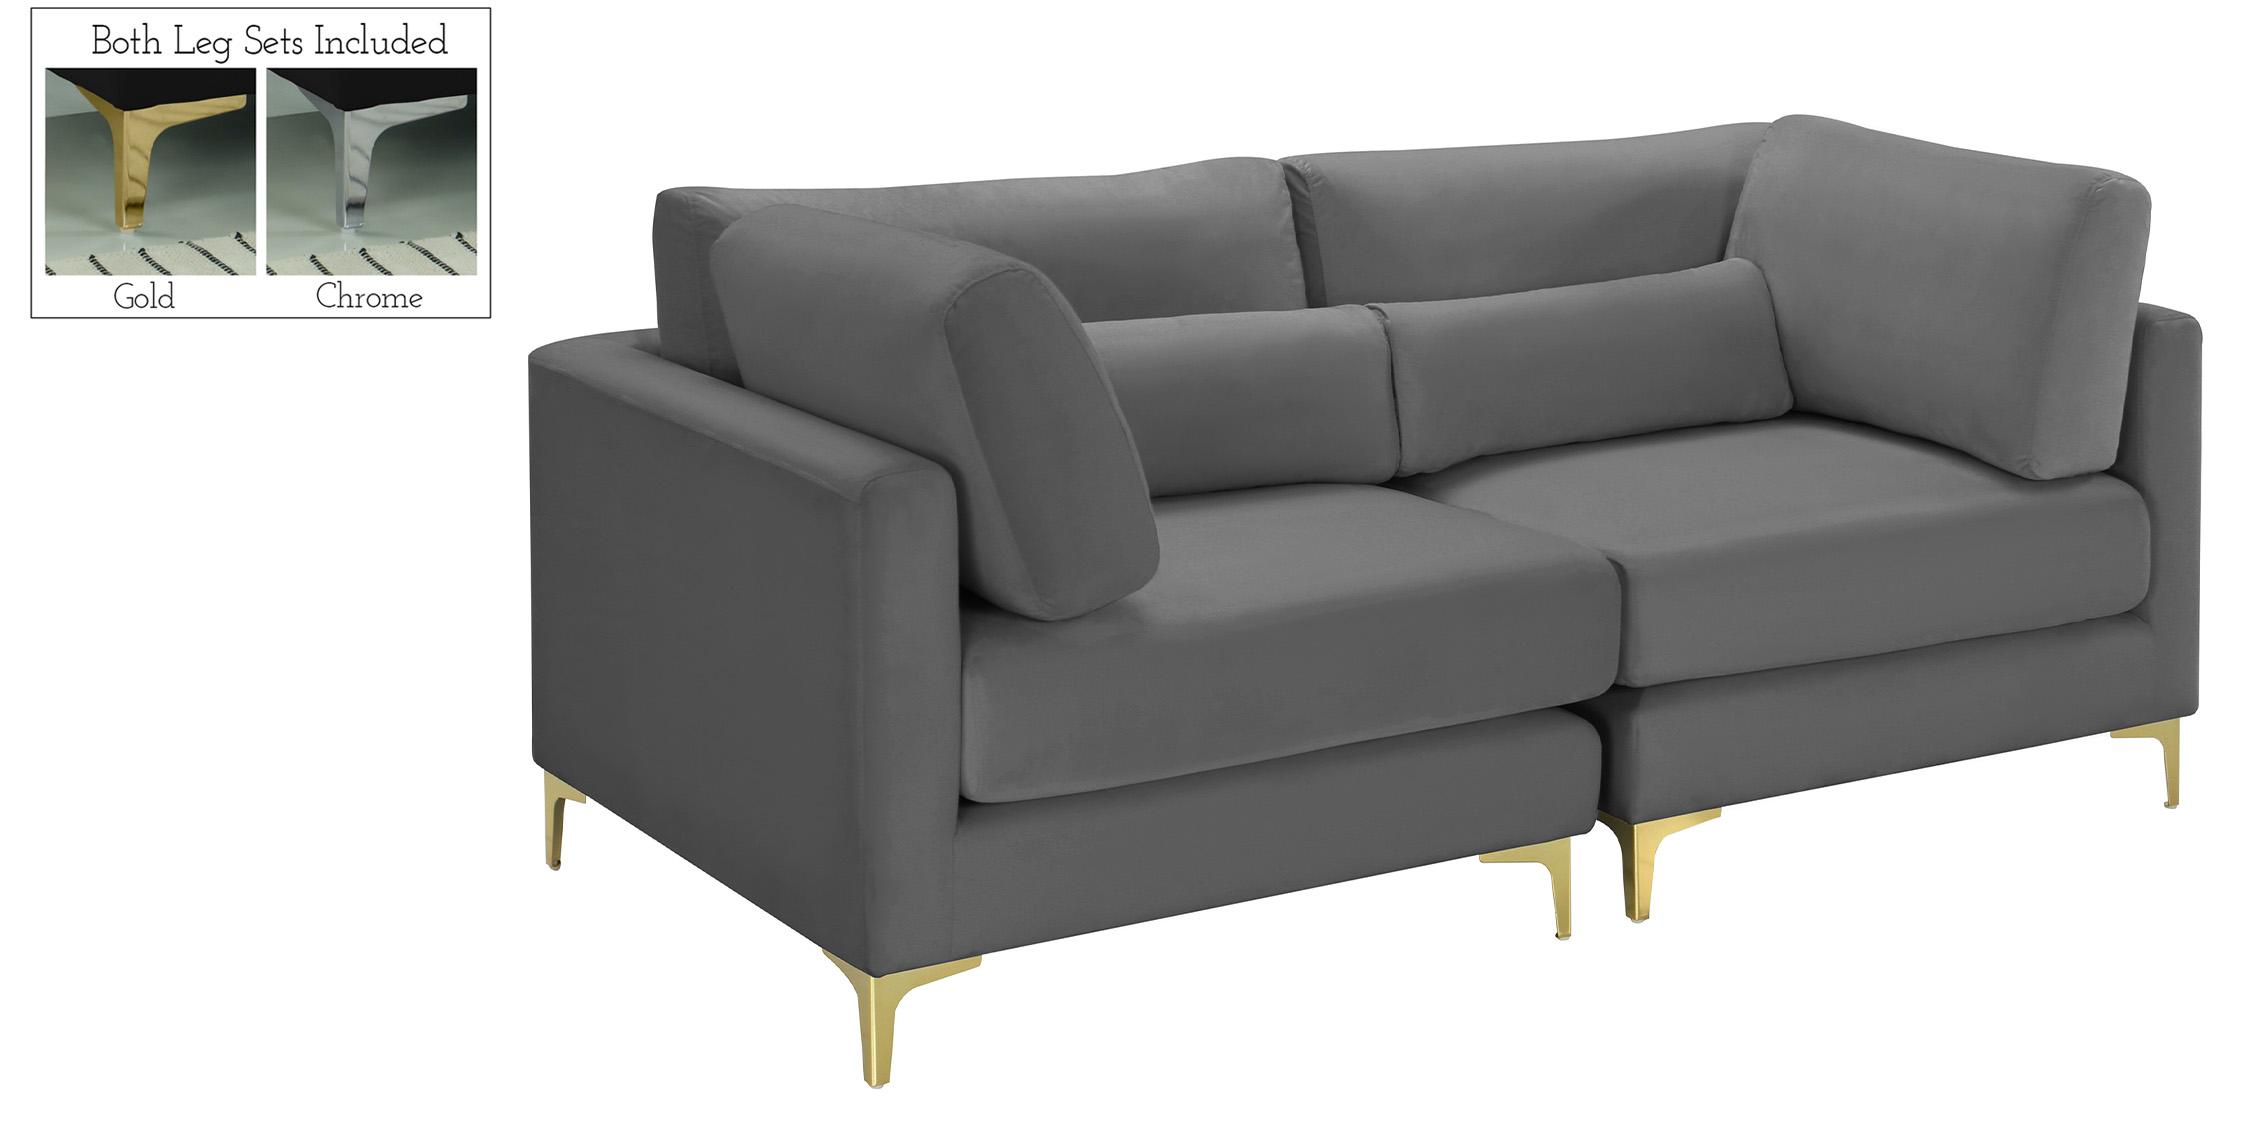 Contemporary, Modern Modular Sofa JULIA 605Grey-S75 605Grey-S75 in Gray Velvet